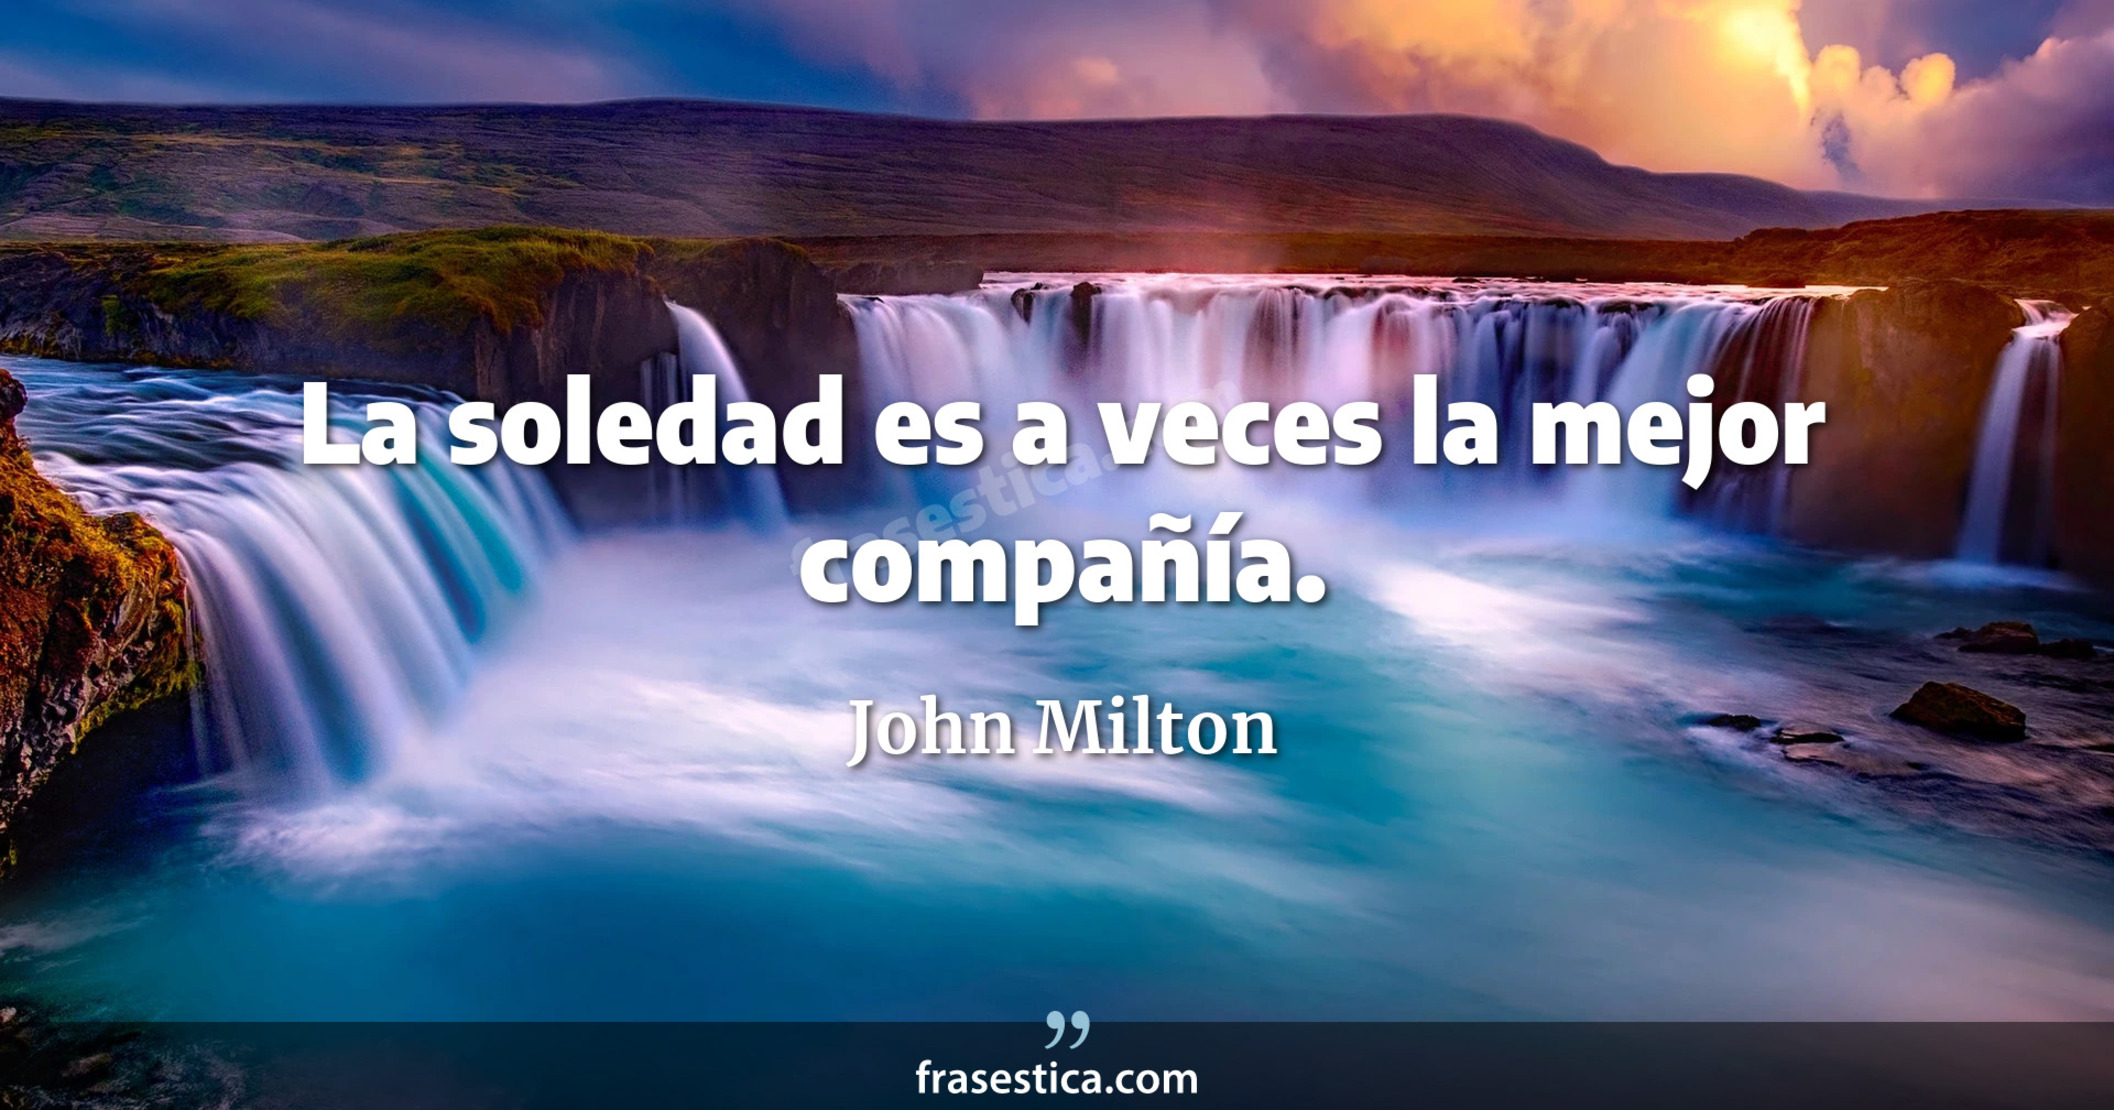 La soledad es a veces la mejor compañía. - John Milton